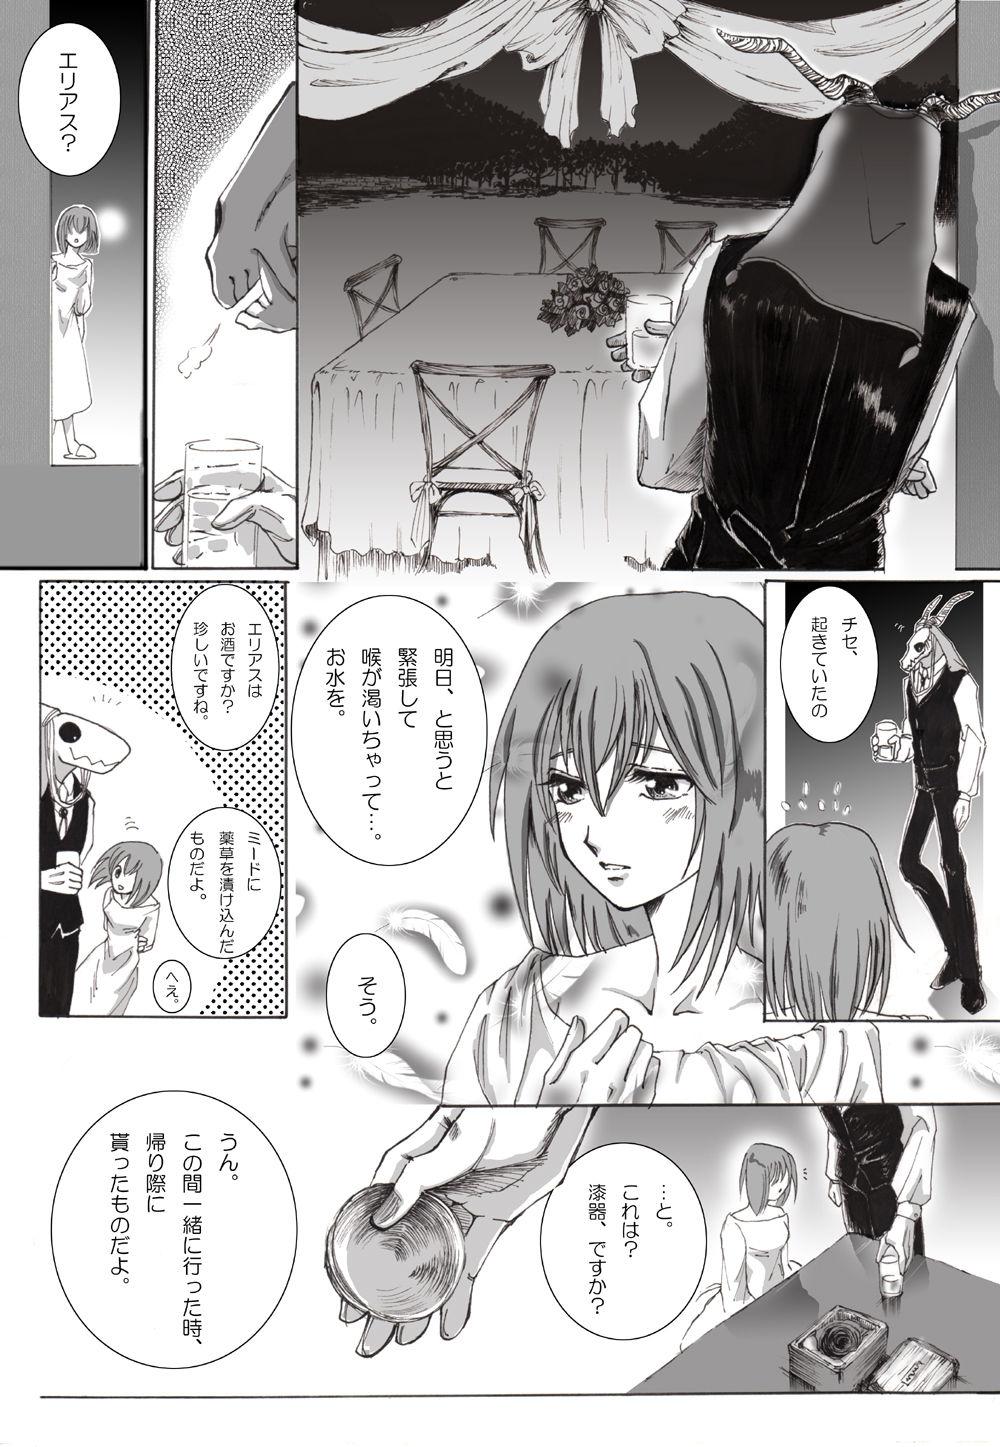 Stockings Nectar and his robbin are... - Mahoutsukai no yome Internal - Page 1